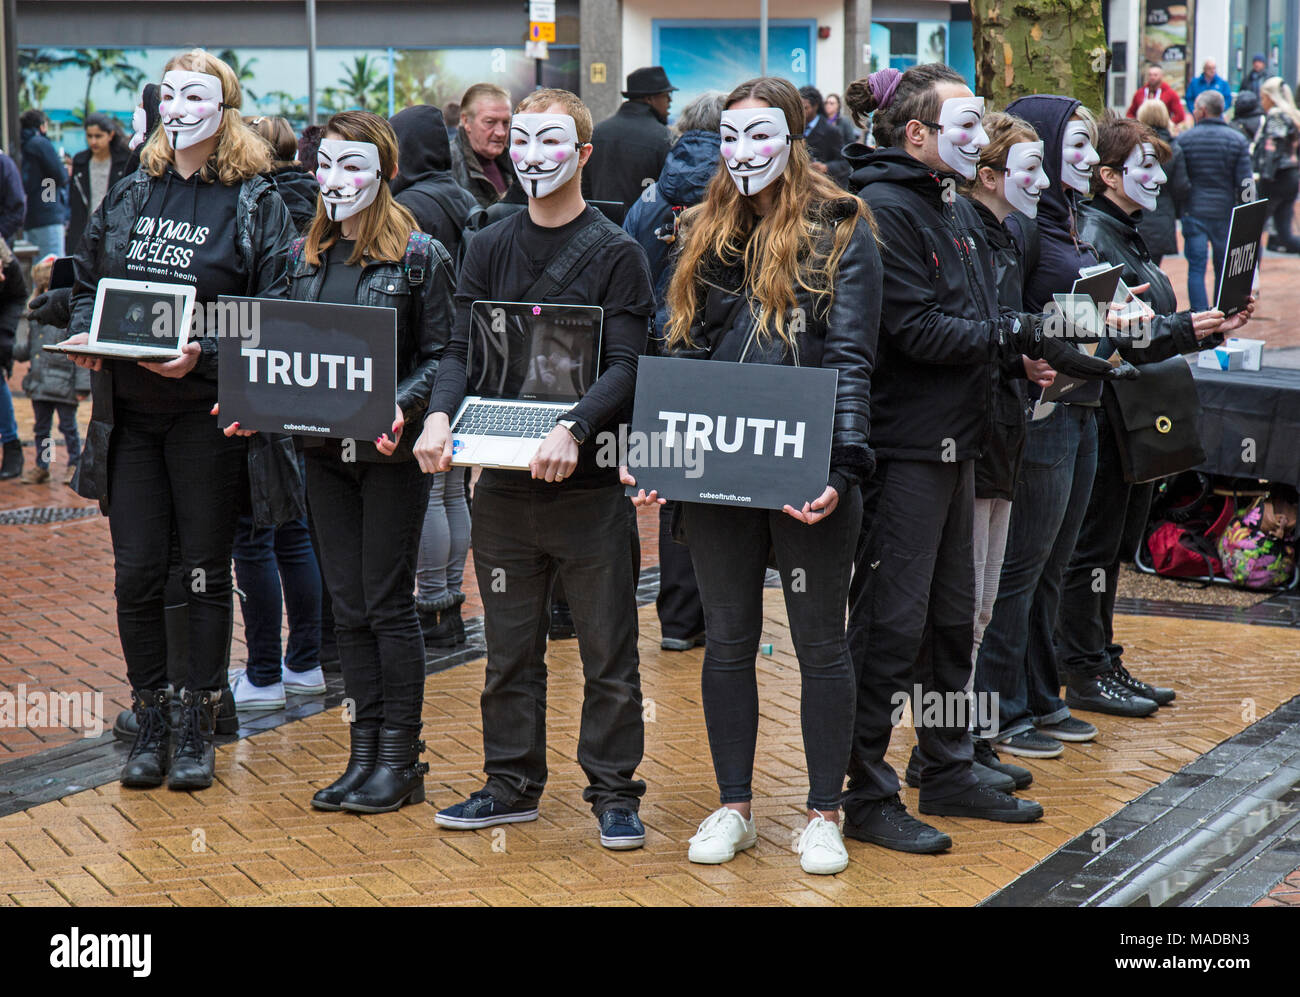 Un groupe de militants des droits des animaux dans le centre-ville de Birmingham, Angleterre. La portaient tous des masques de type Guy Fawkes et portaient des pancartes avec le mot 'vérité' Banque D'Images